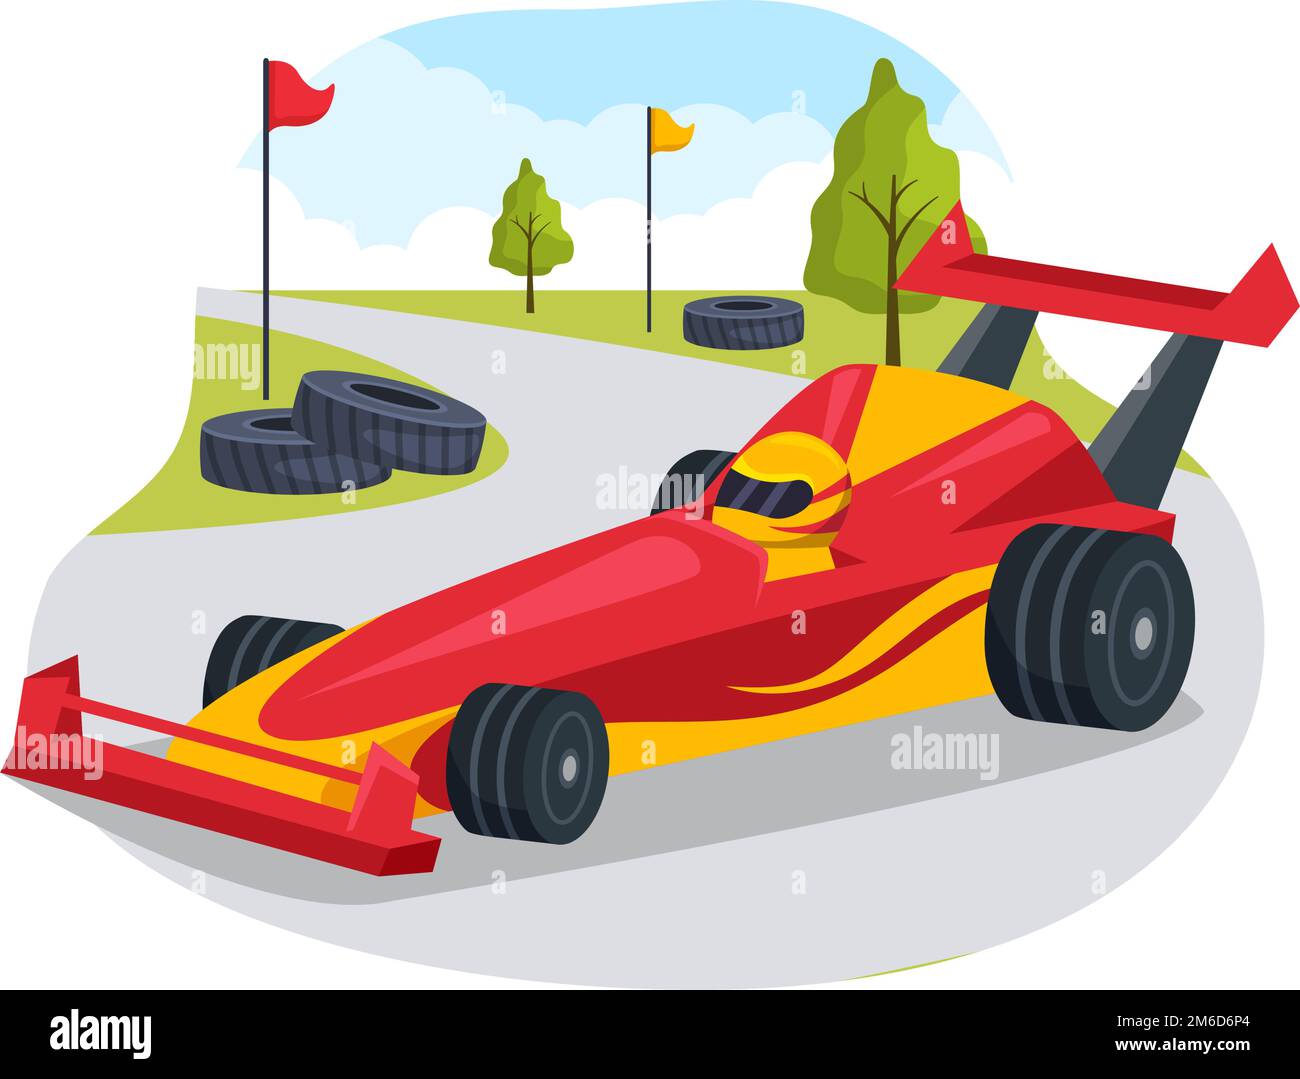 Formula Racing Sportwagen greifen auf der Rennstrecke die Ziellinie Cartoon-Illustration, um die Meisterschaft im flachen handgezogenen Vorlagendesign zu gewinnen Stock Vektor